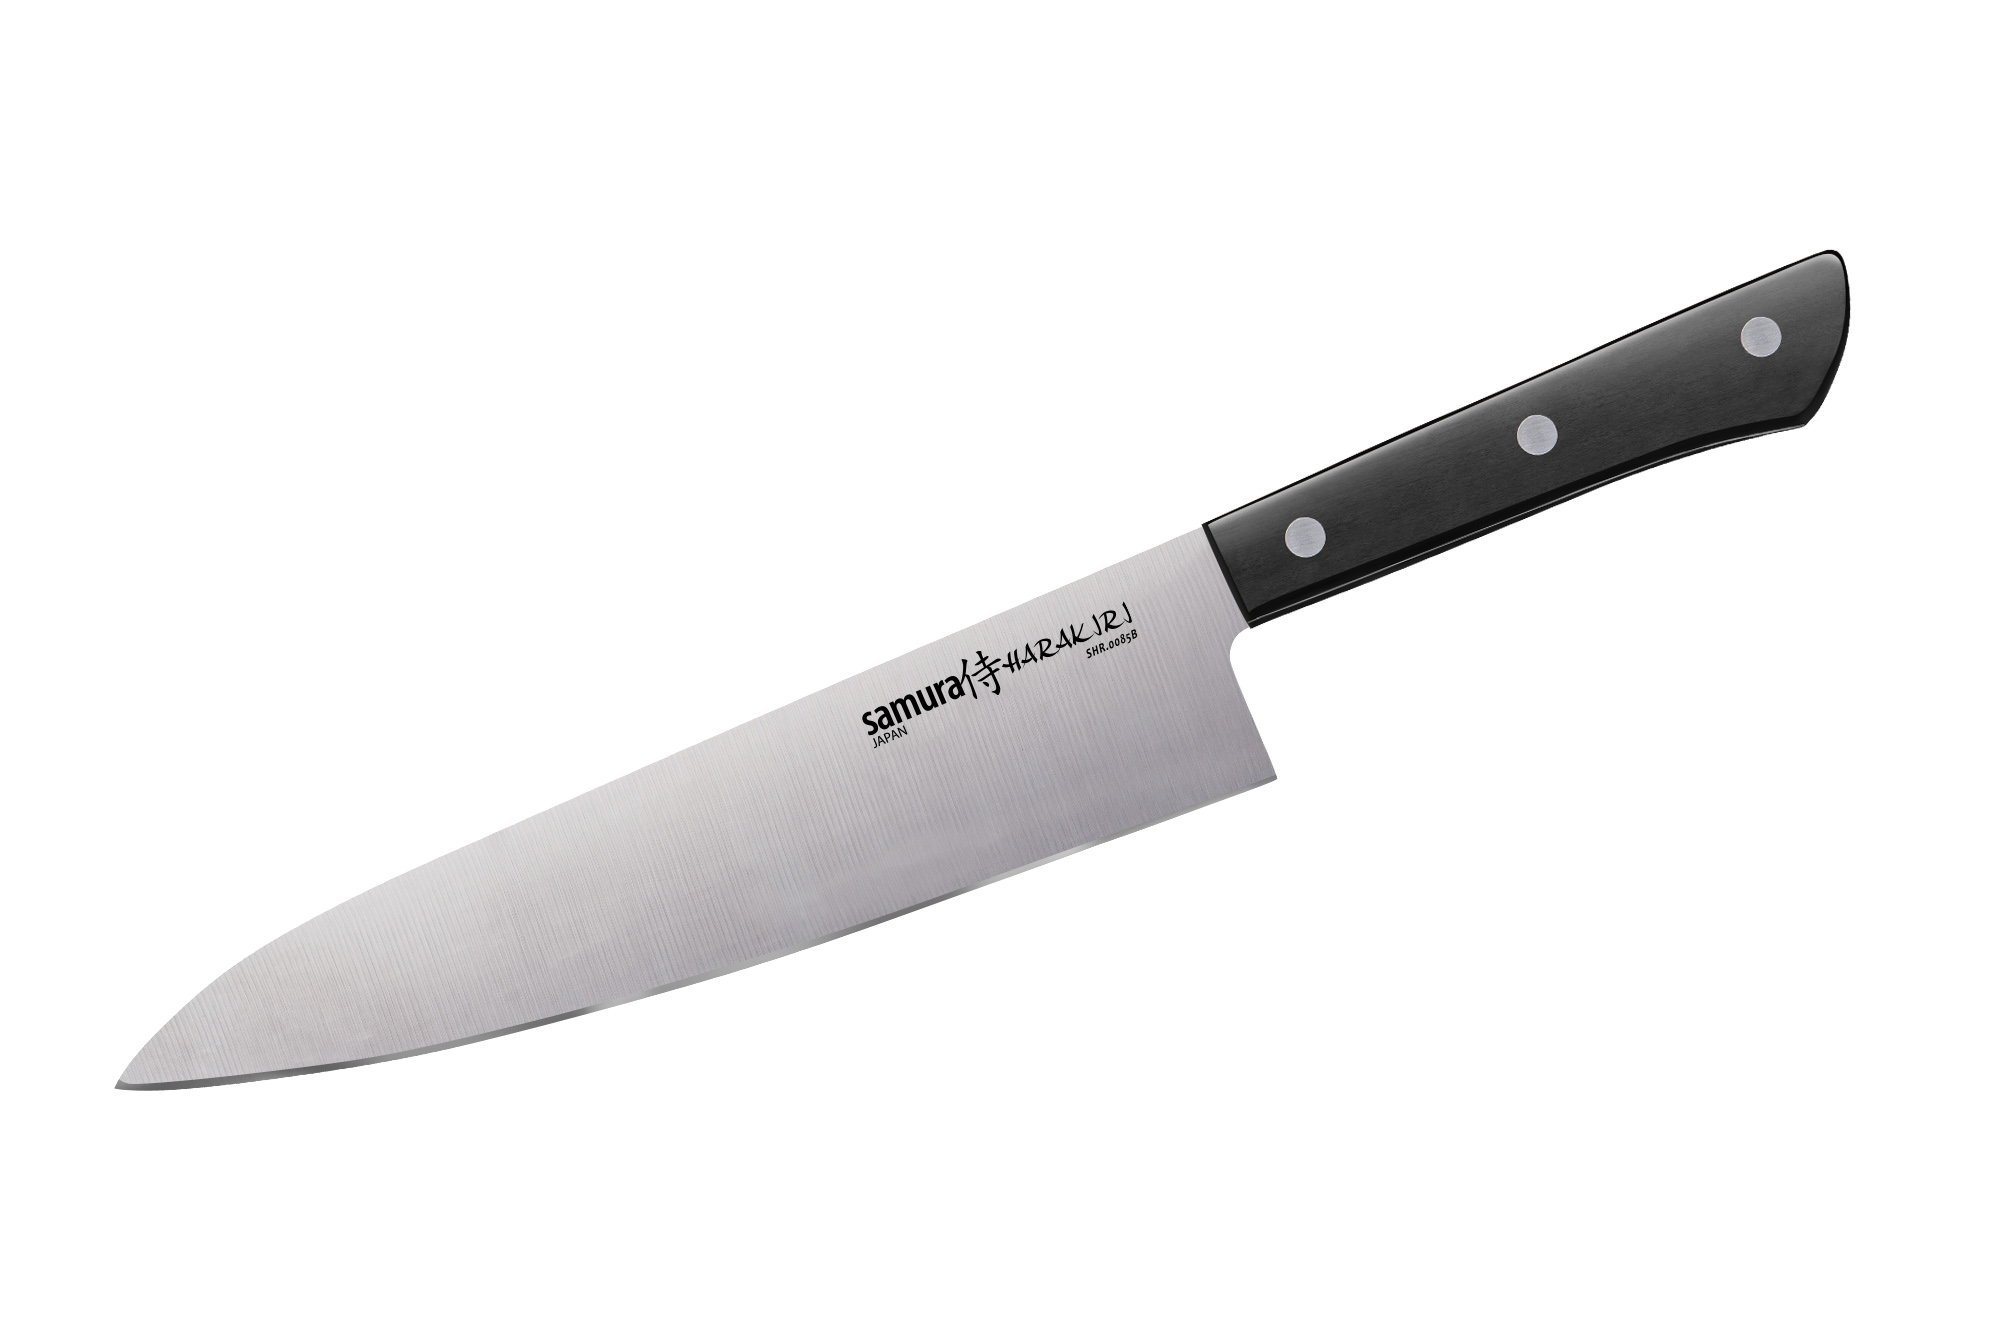  ножи для кухни, ТОП-12 рейтинг кухонных ножей 2020